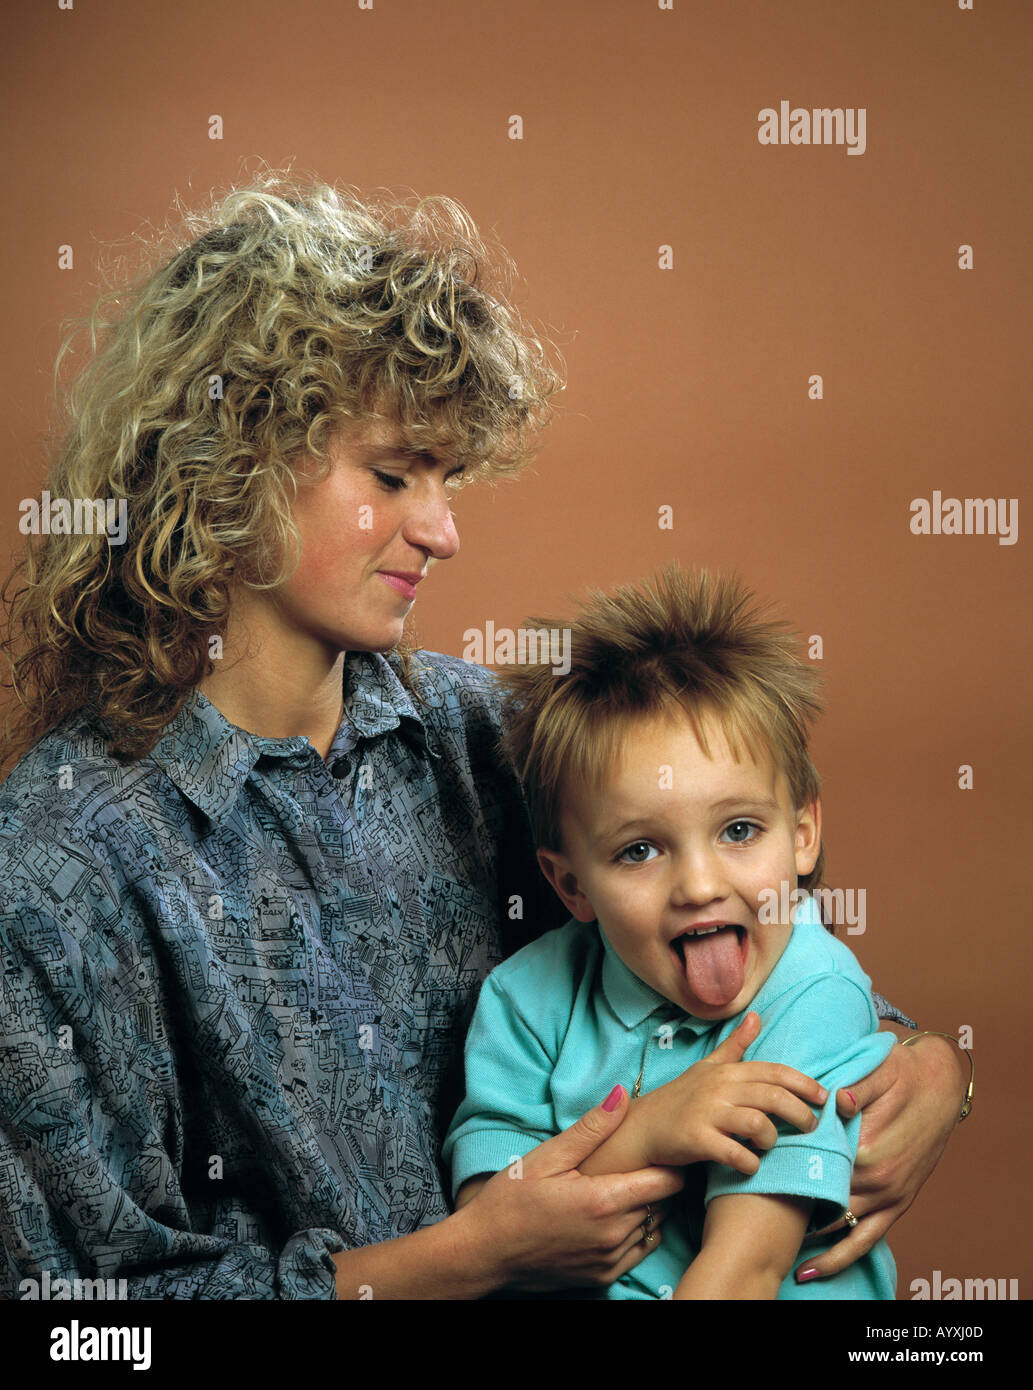 kleiner Junge auf dem Schoss der Mutter zeigt dem Fotografen die Zunge Stock Photo